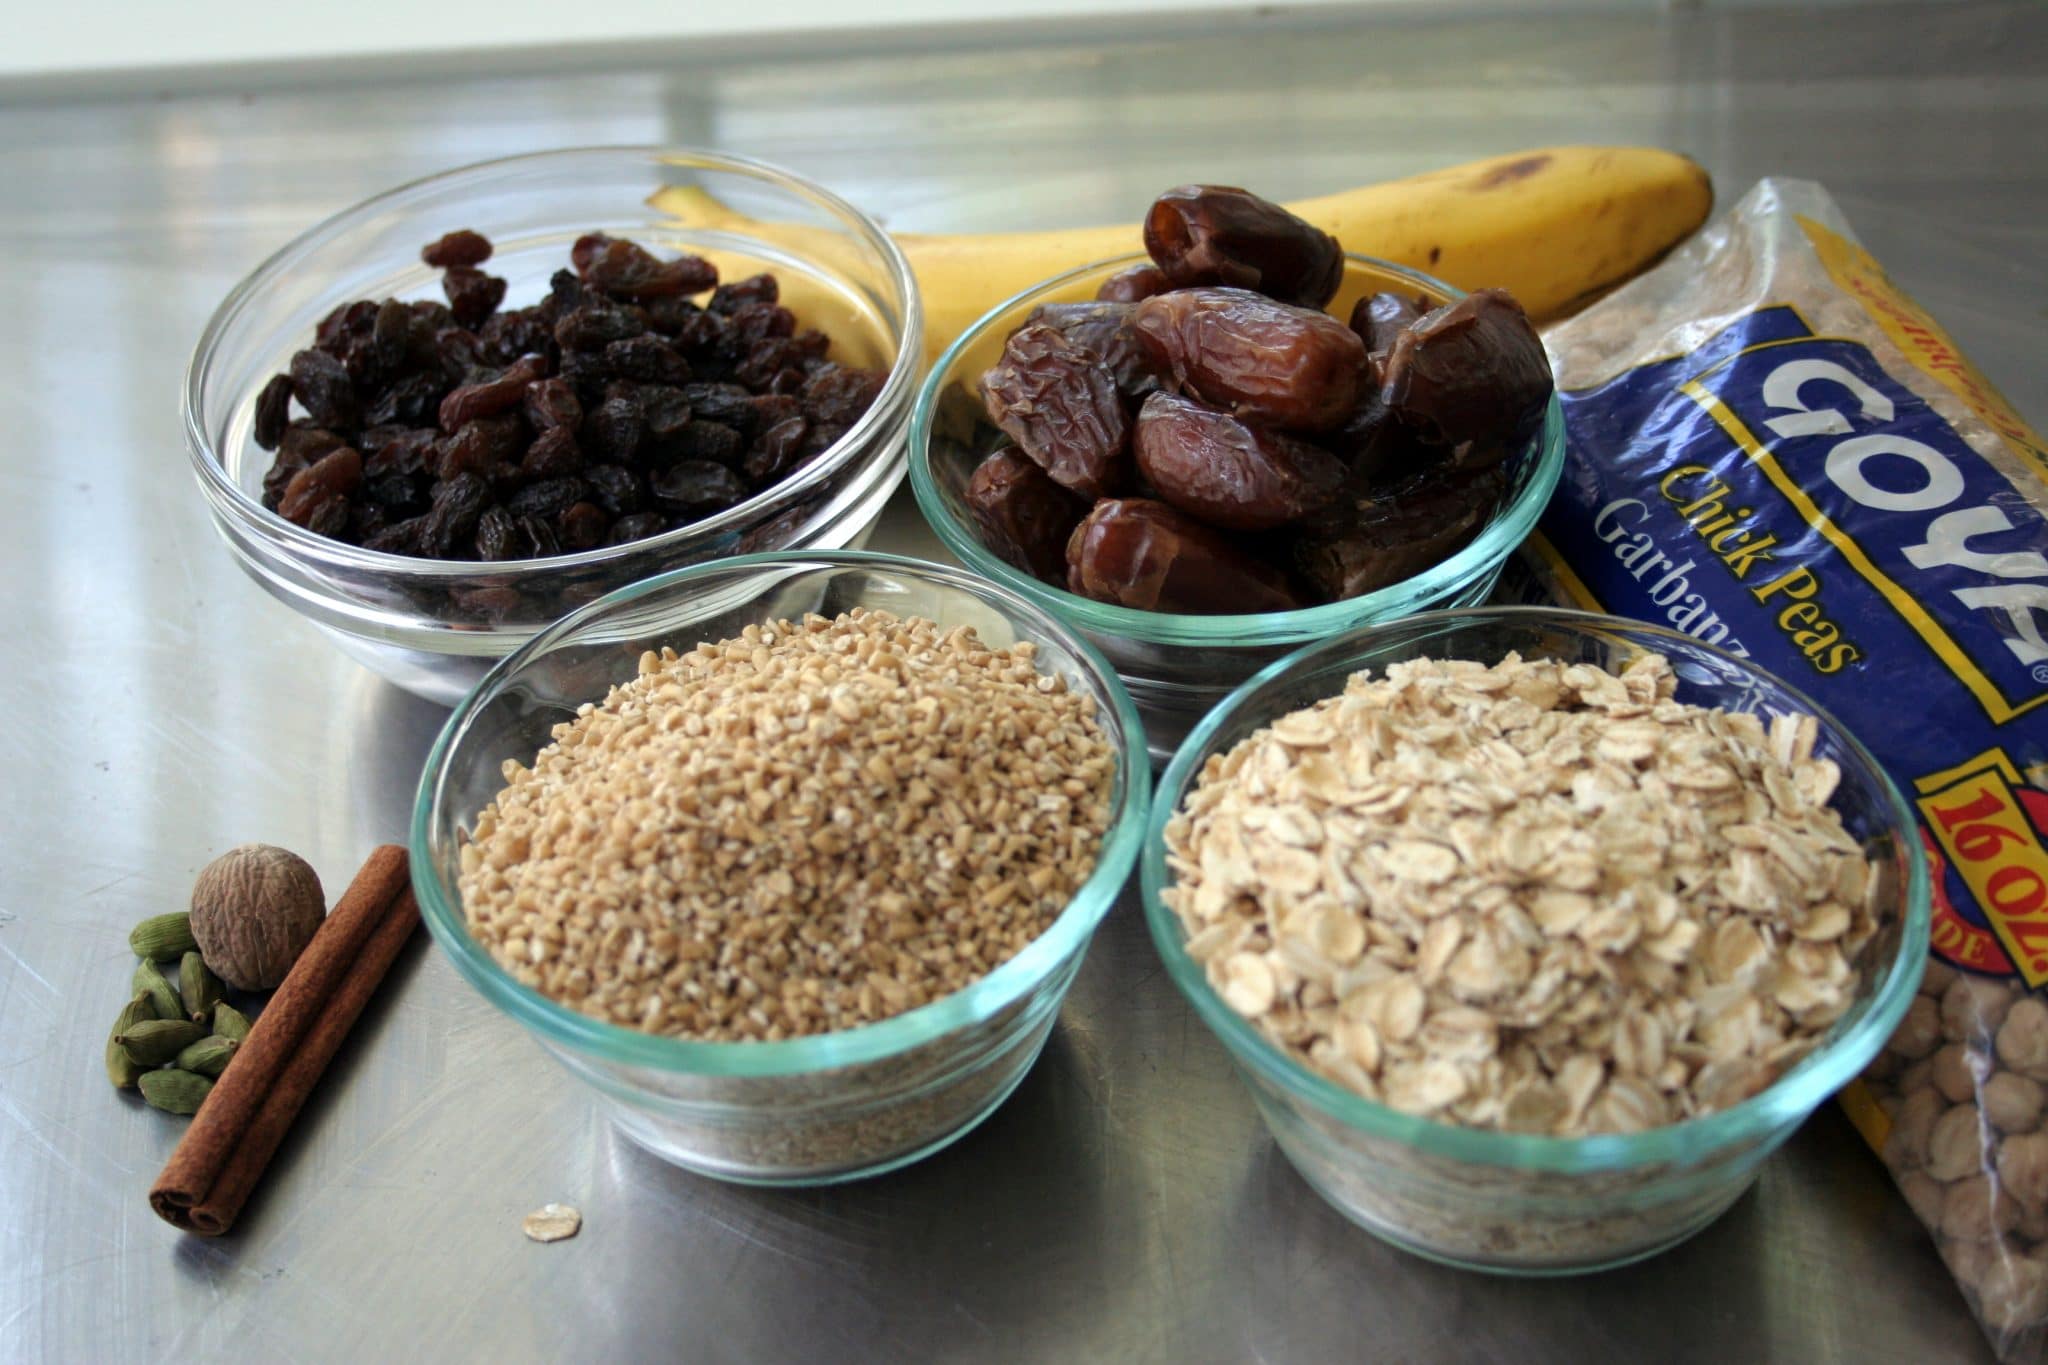 Ingredients to make Vegan Oatmeal Raisin cookies